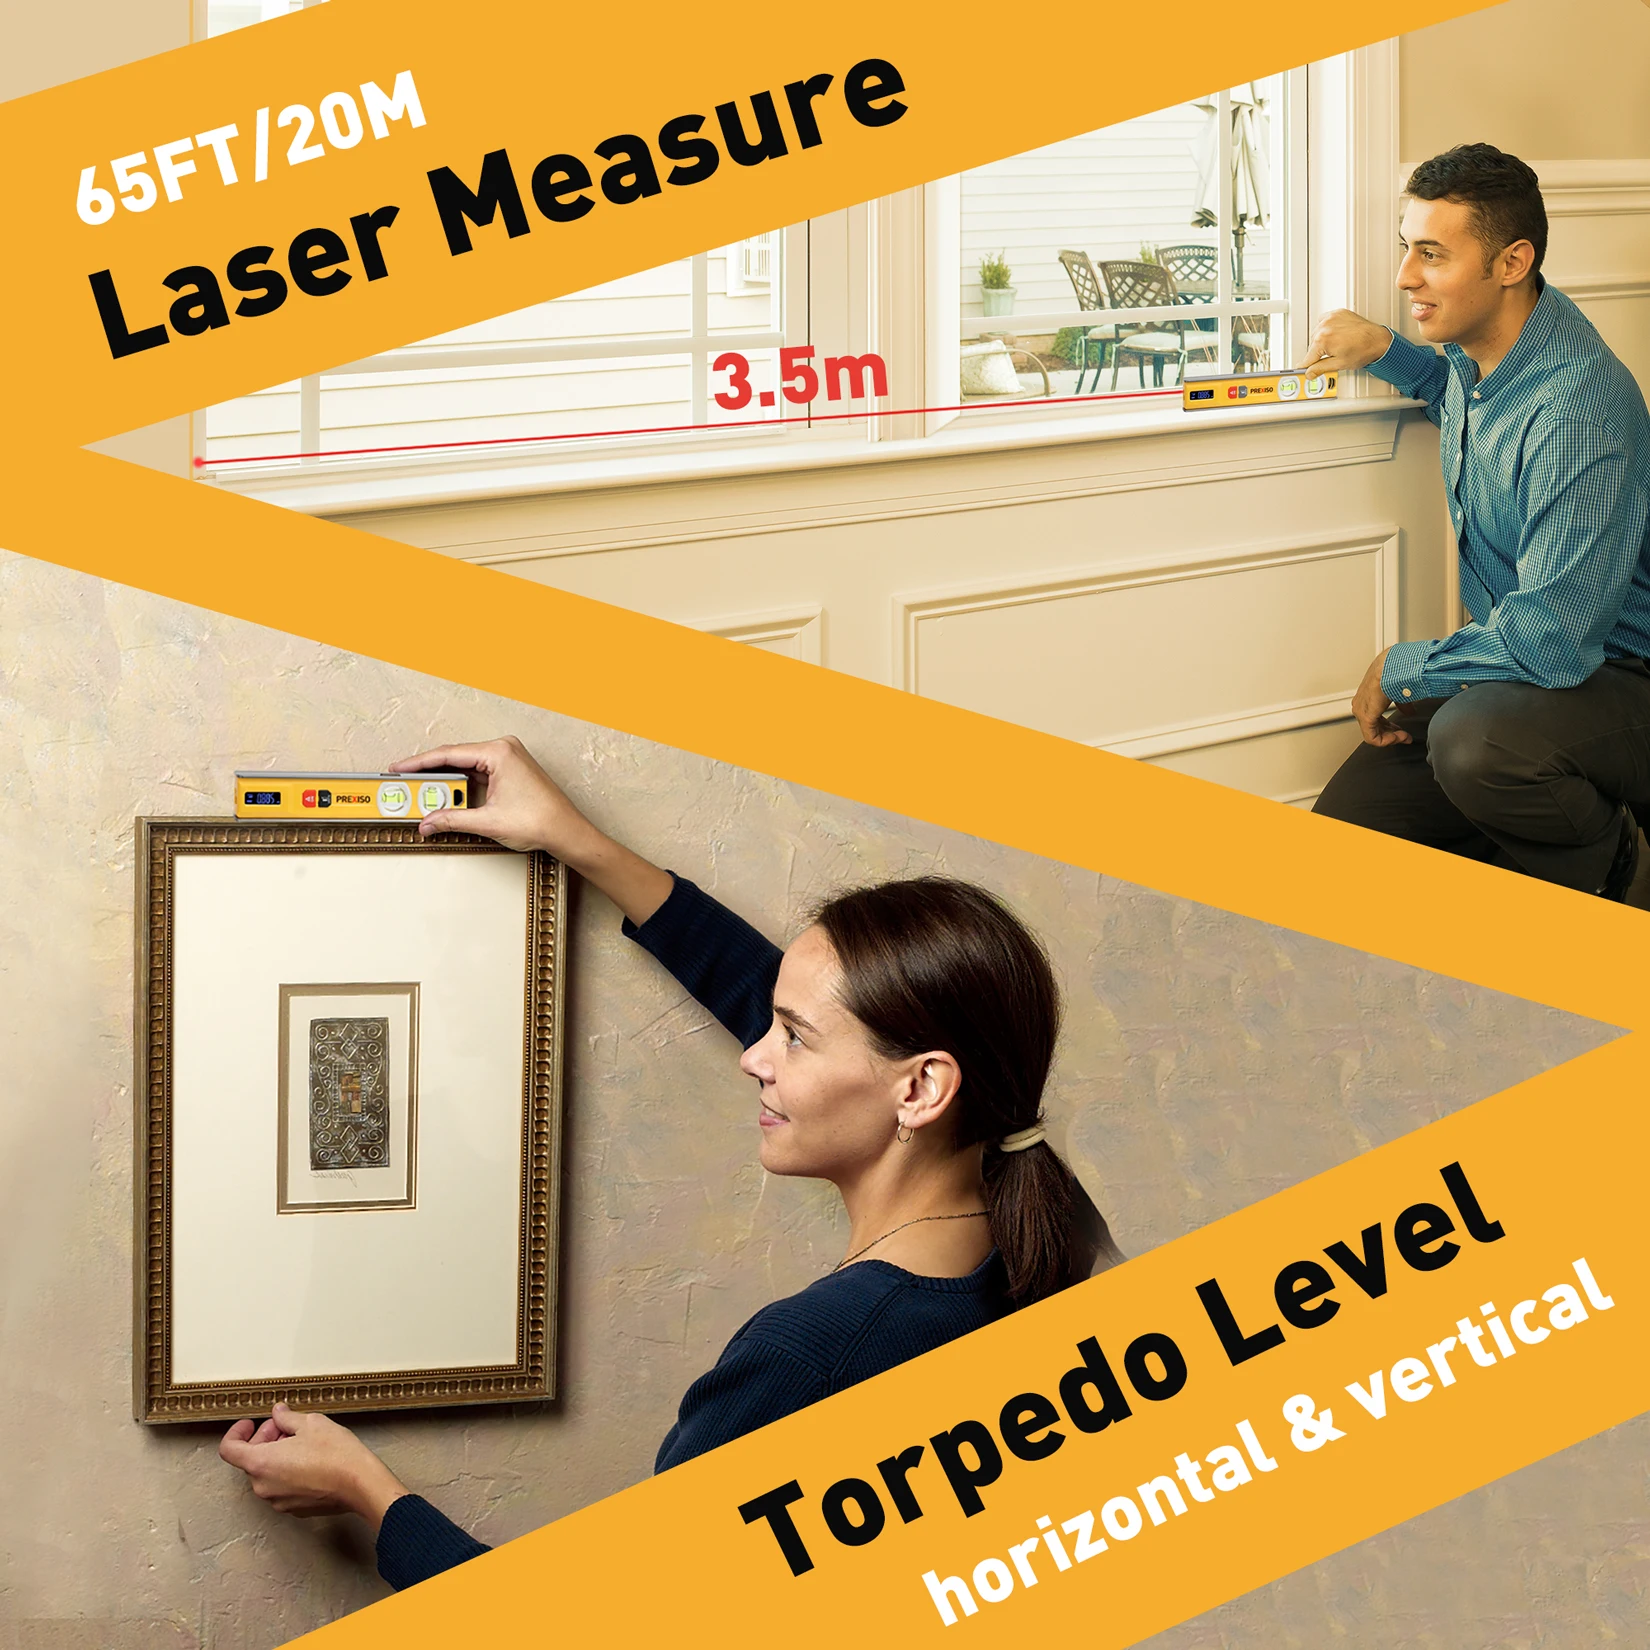 Mesure laser 20m